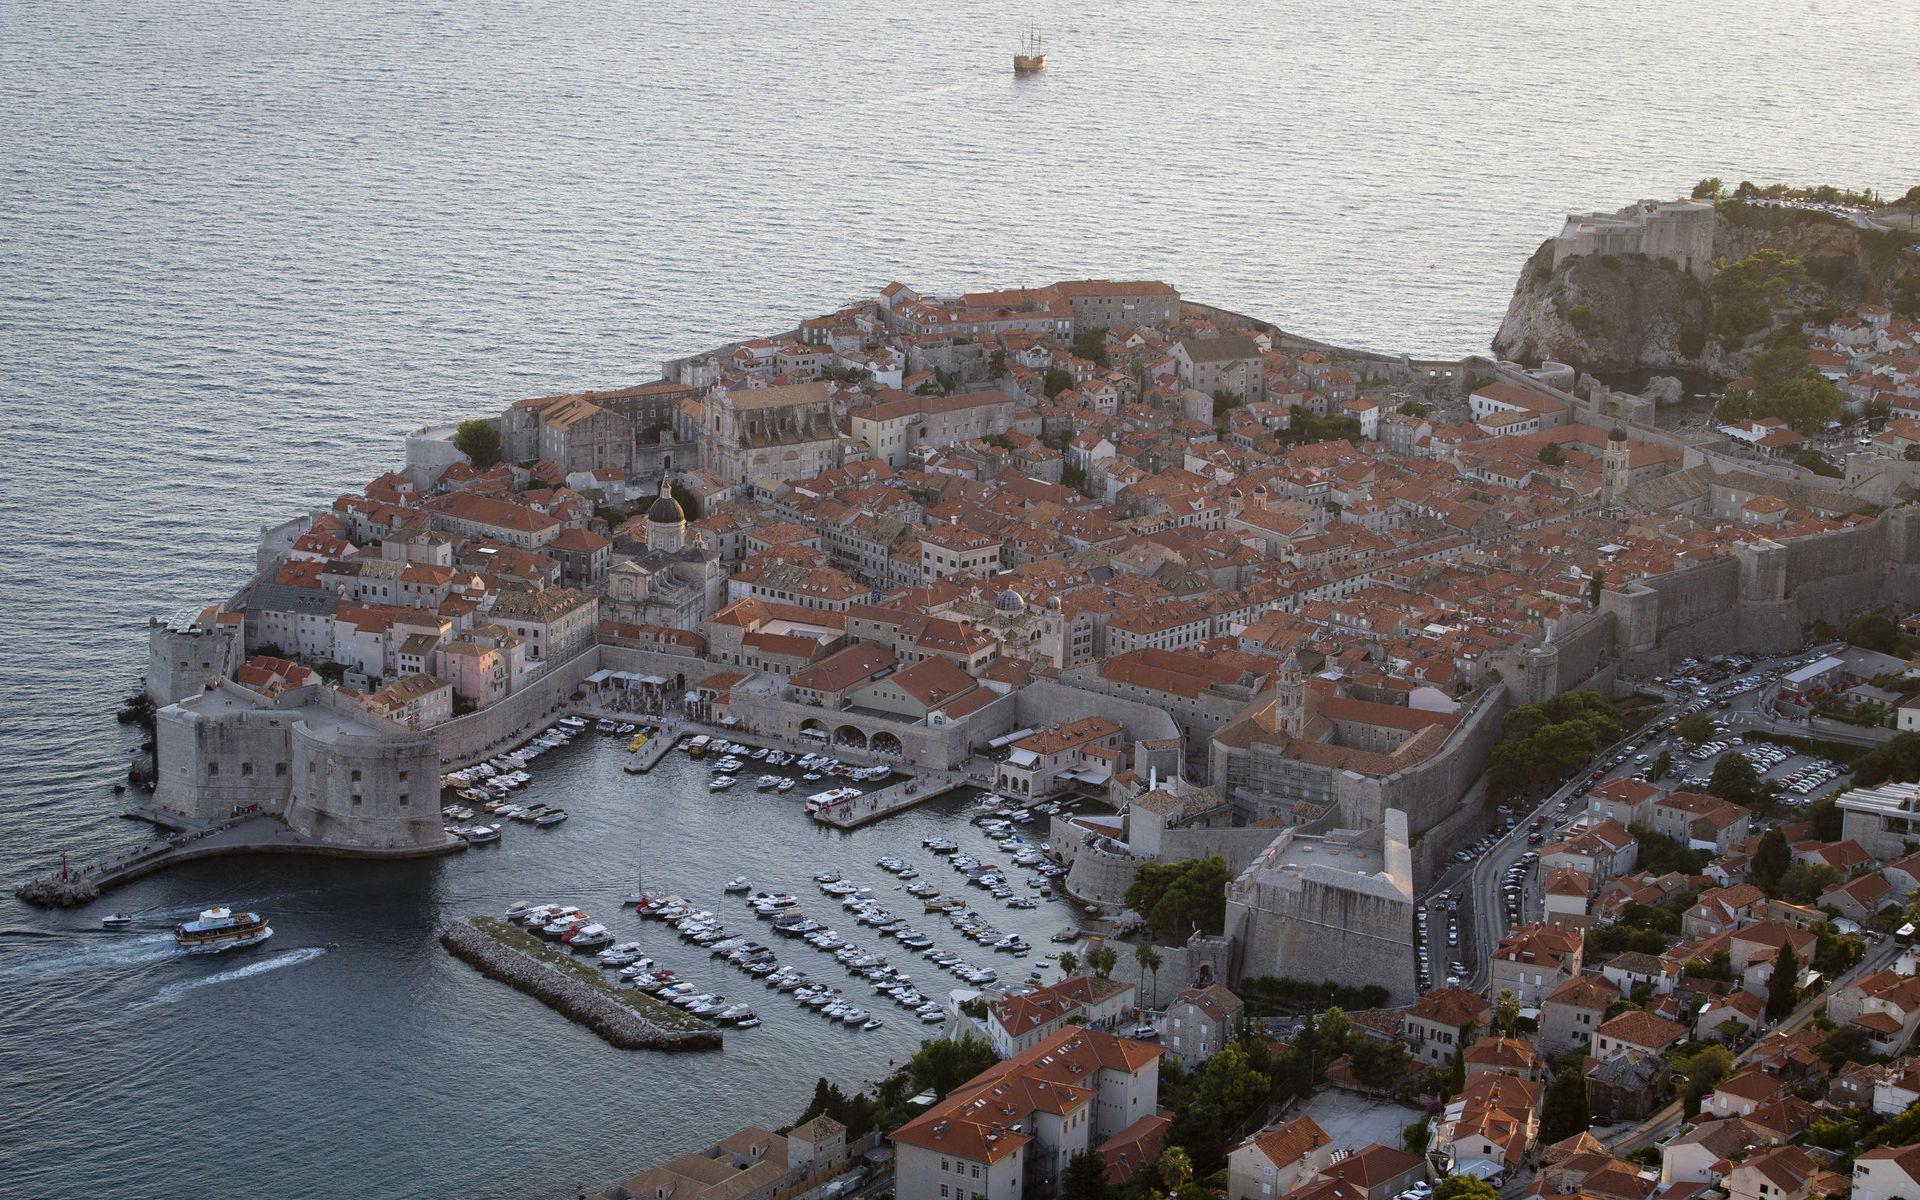 Dubrovnik är som tagen ur en scen från &quot;Game of Thrones&quot; – bokstavligt talat. Den vackra kroatiska medeltidsstaden har nämligen använts som inspelningsplats för många scener i den populära tv-serien.